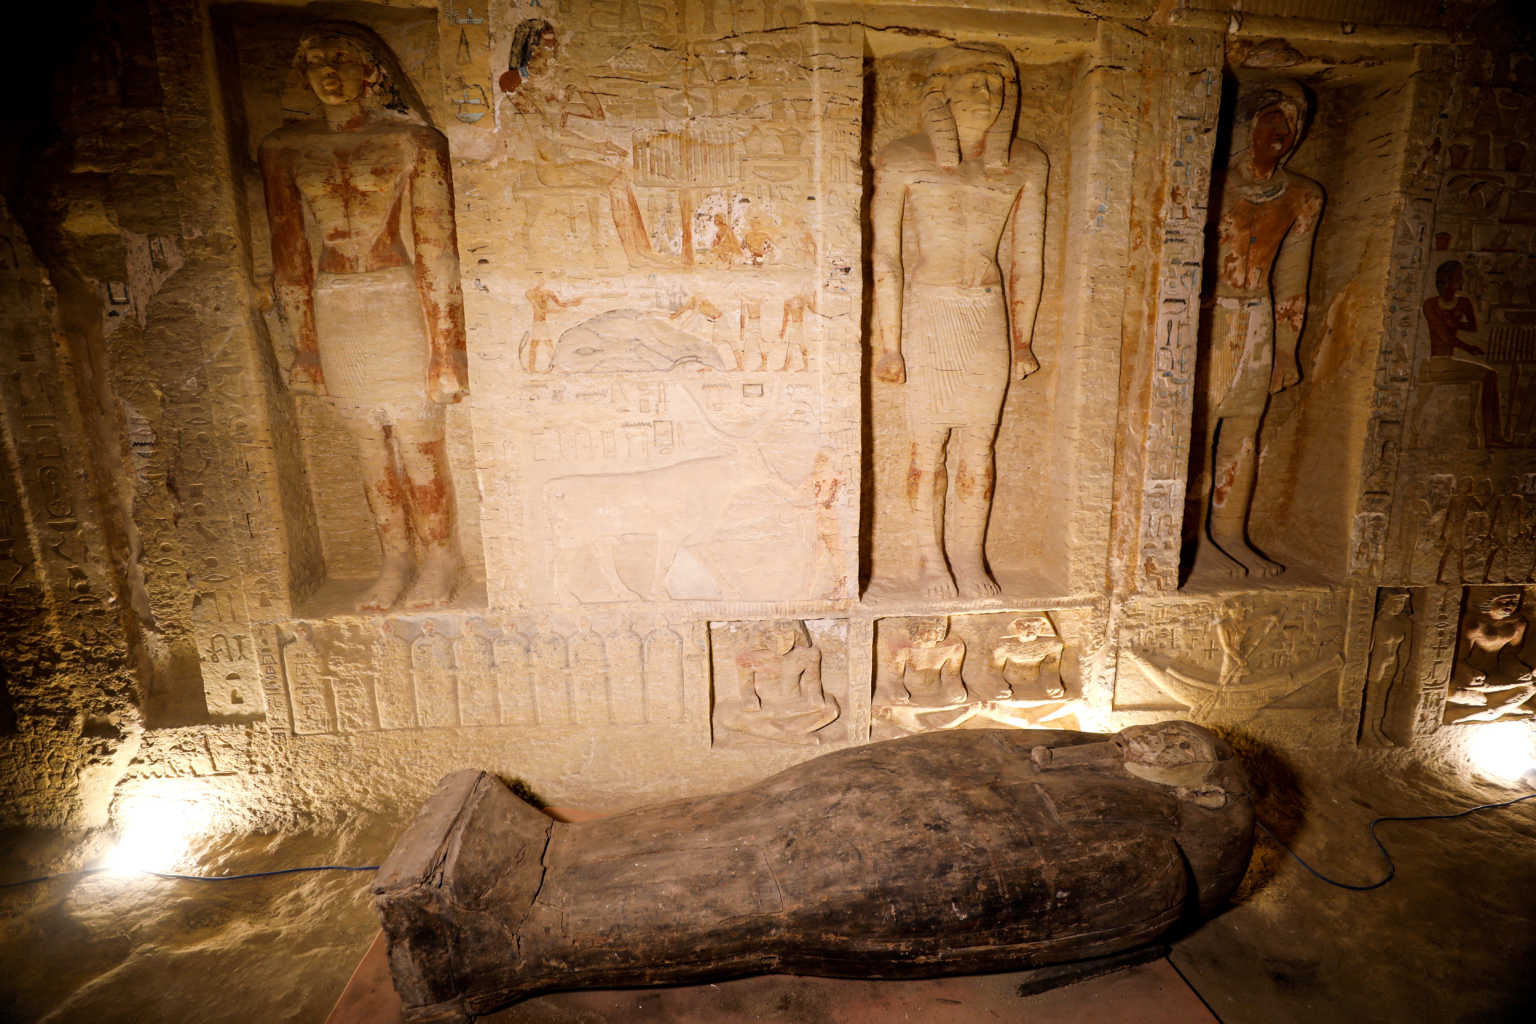 Μεγάλη ανακάλυψη στην Αίγυπτο – Εντοπίστηκαν 59 σαρκοφάγοι στη Νεκρόπολη της Σακκάρα (φώτο-βίντεο) (upd)